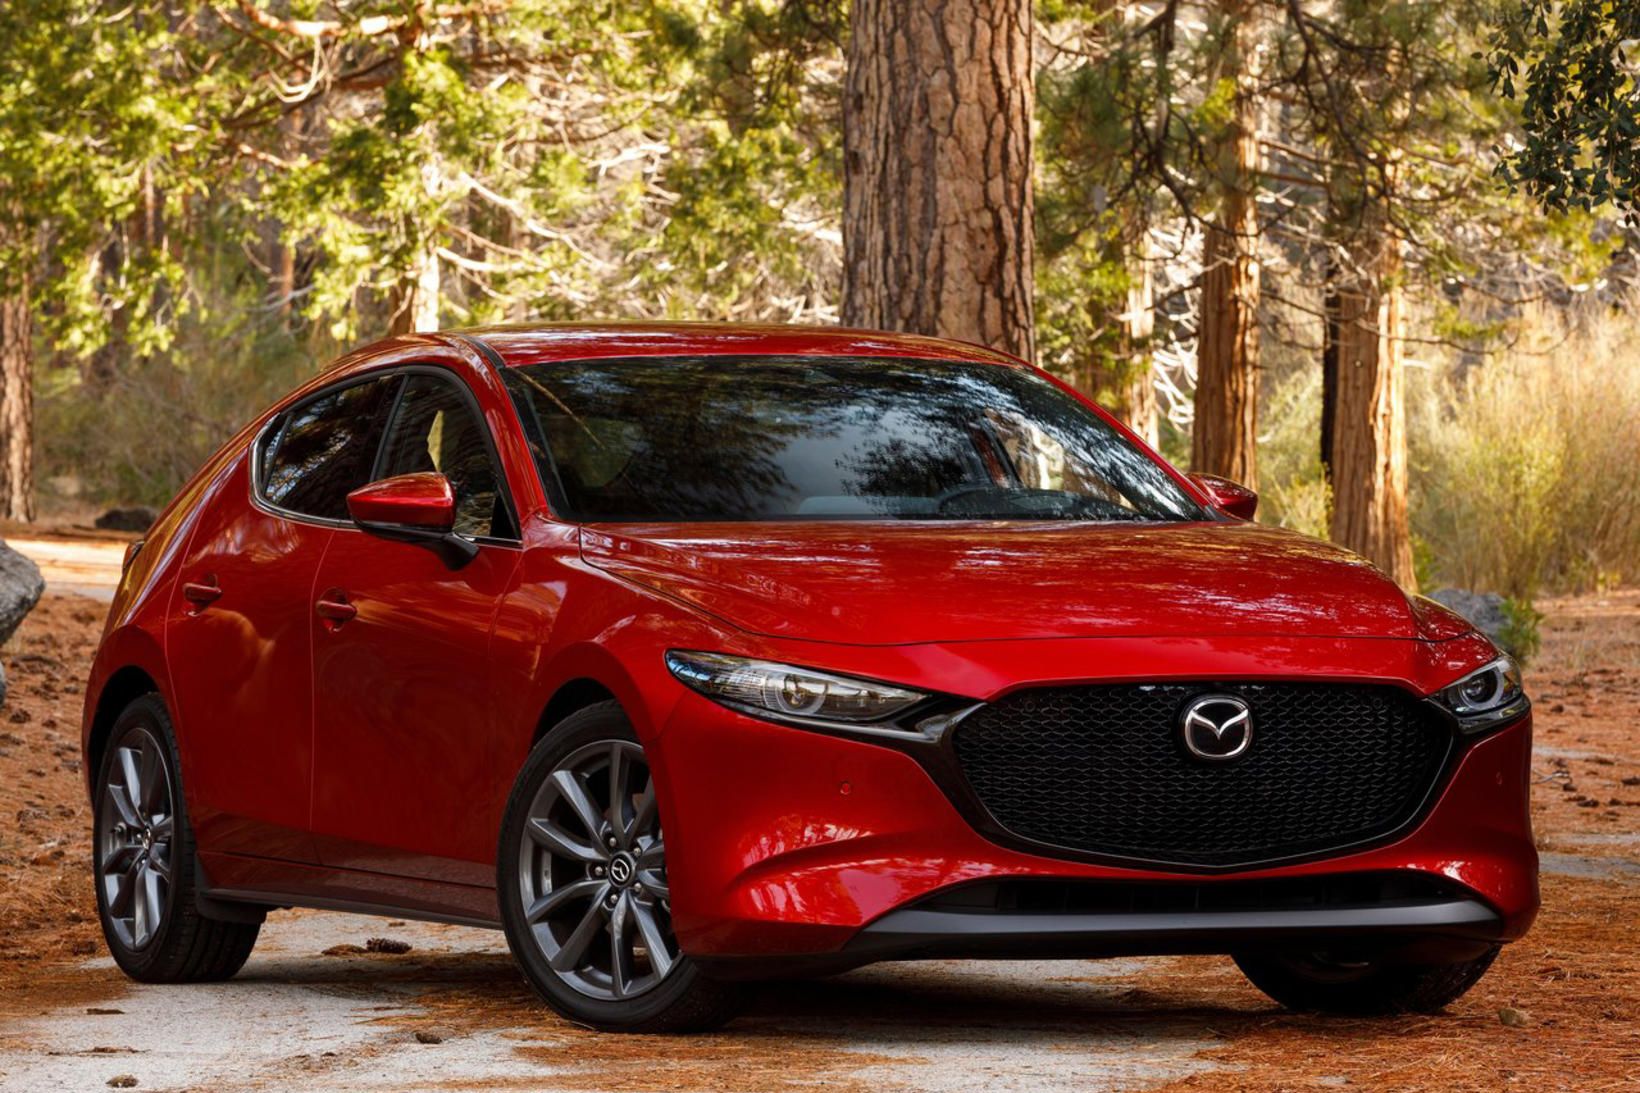 Mazda 3 keppir um titilinn bílhönnun ársins auk titilsins heimsbíll …